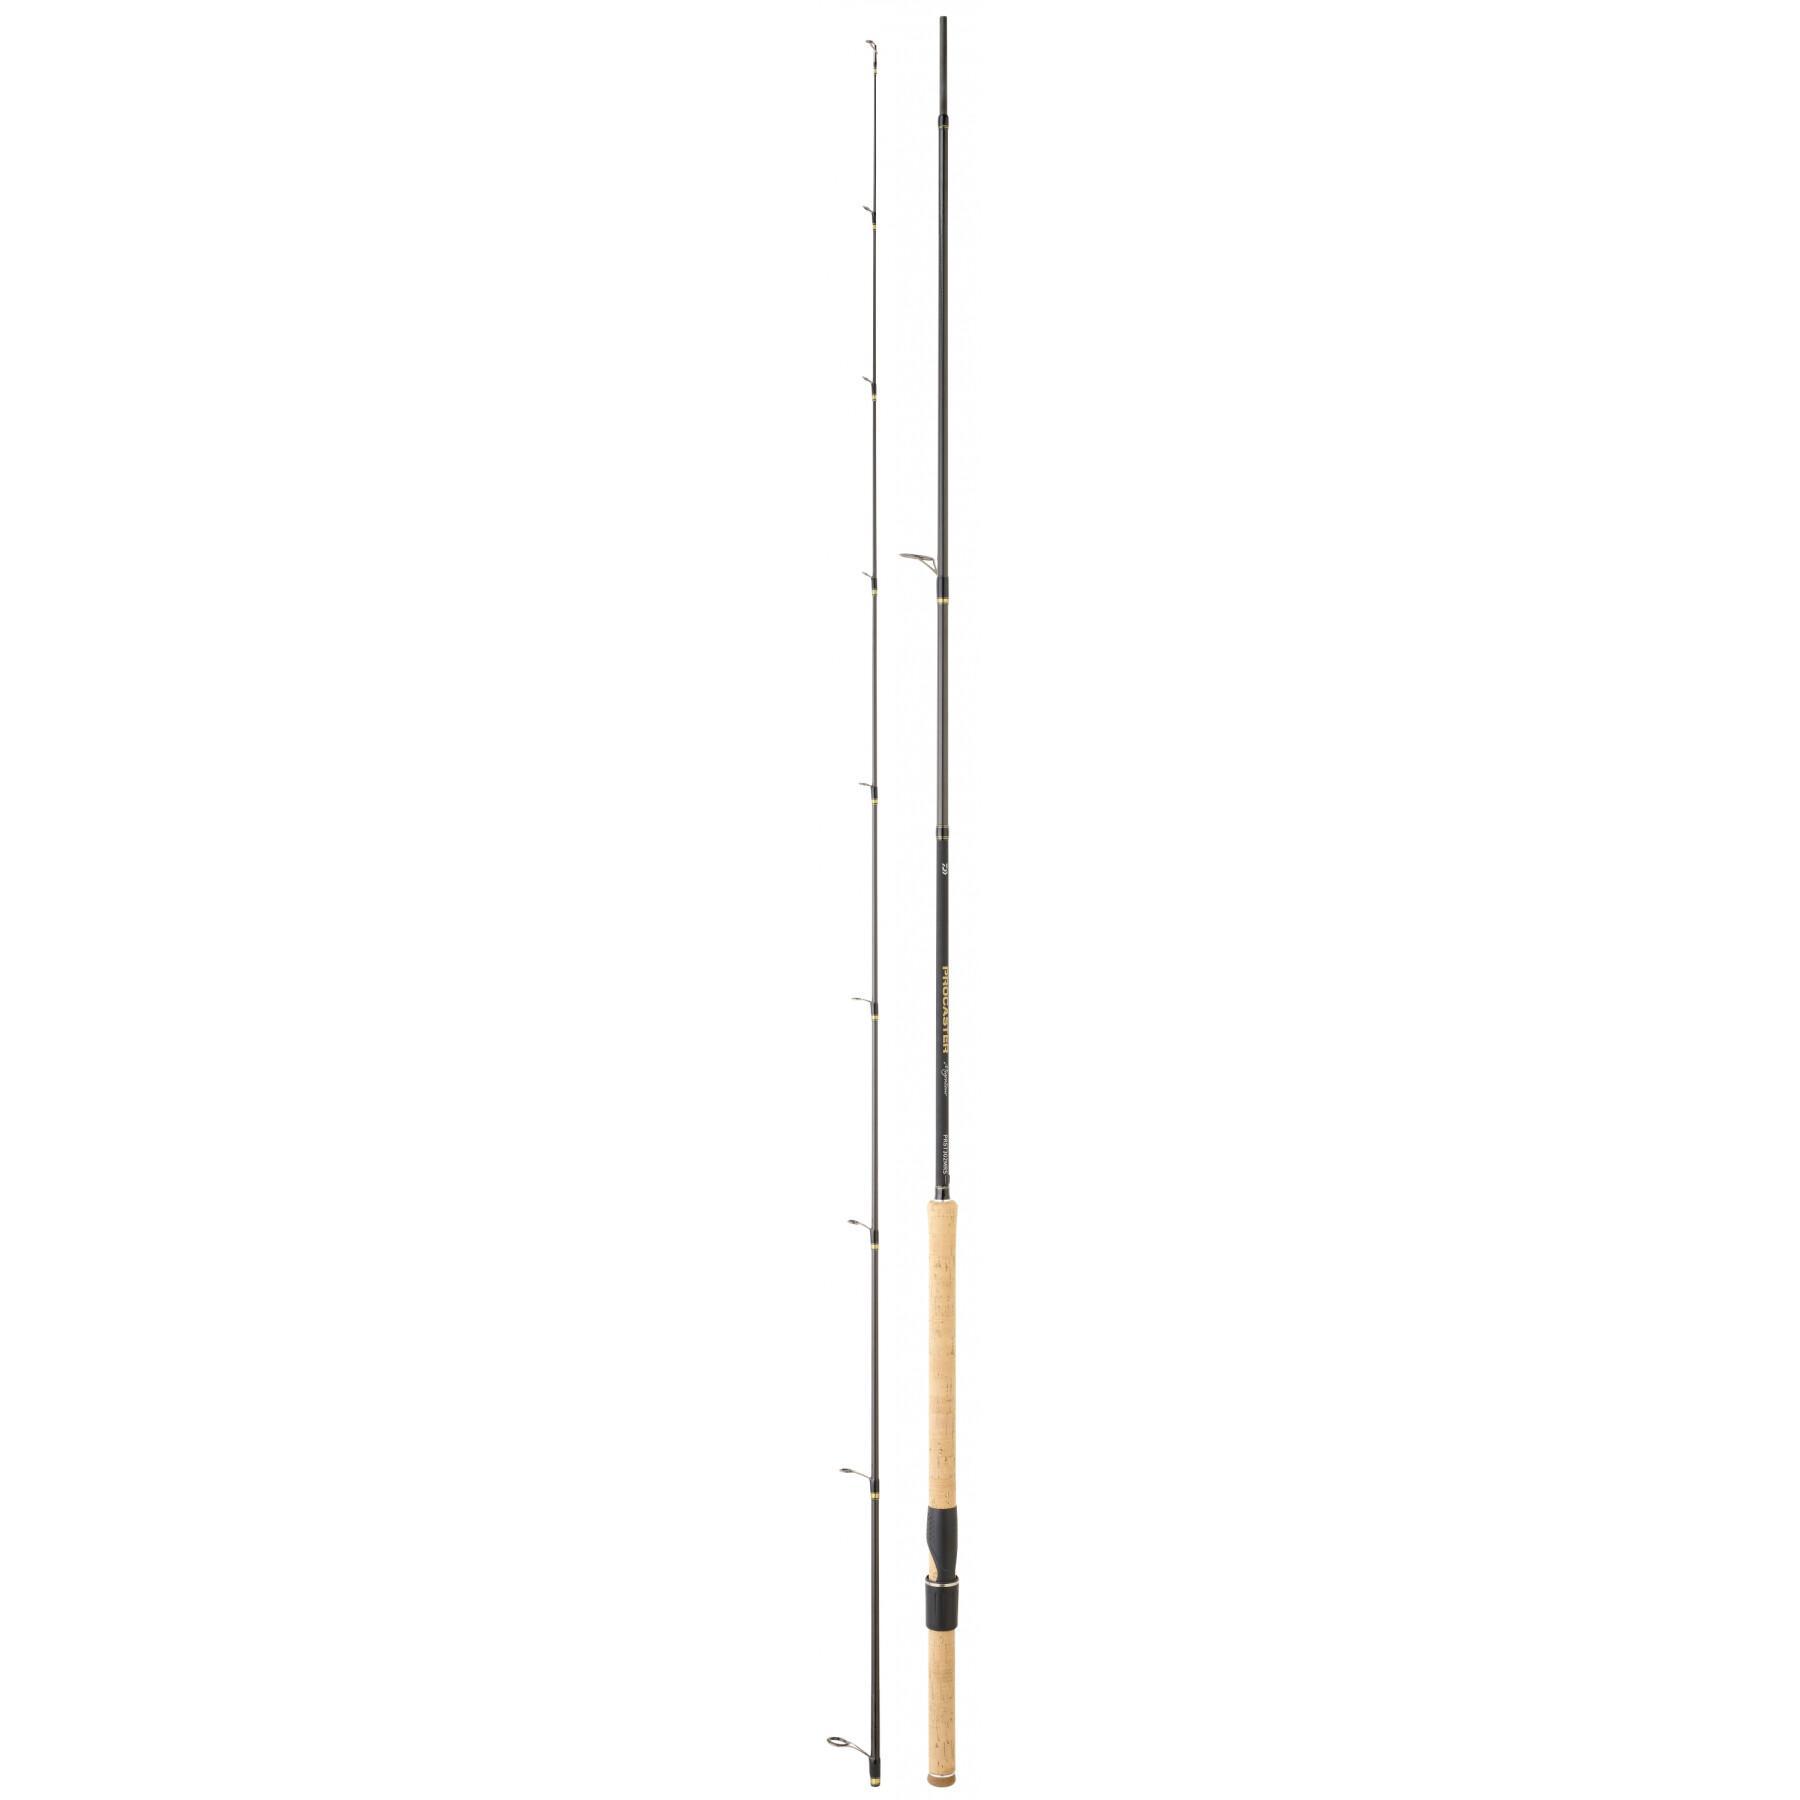 Trout rod Daiwa Procaster ST 363 MRS 10-40g